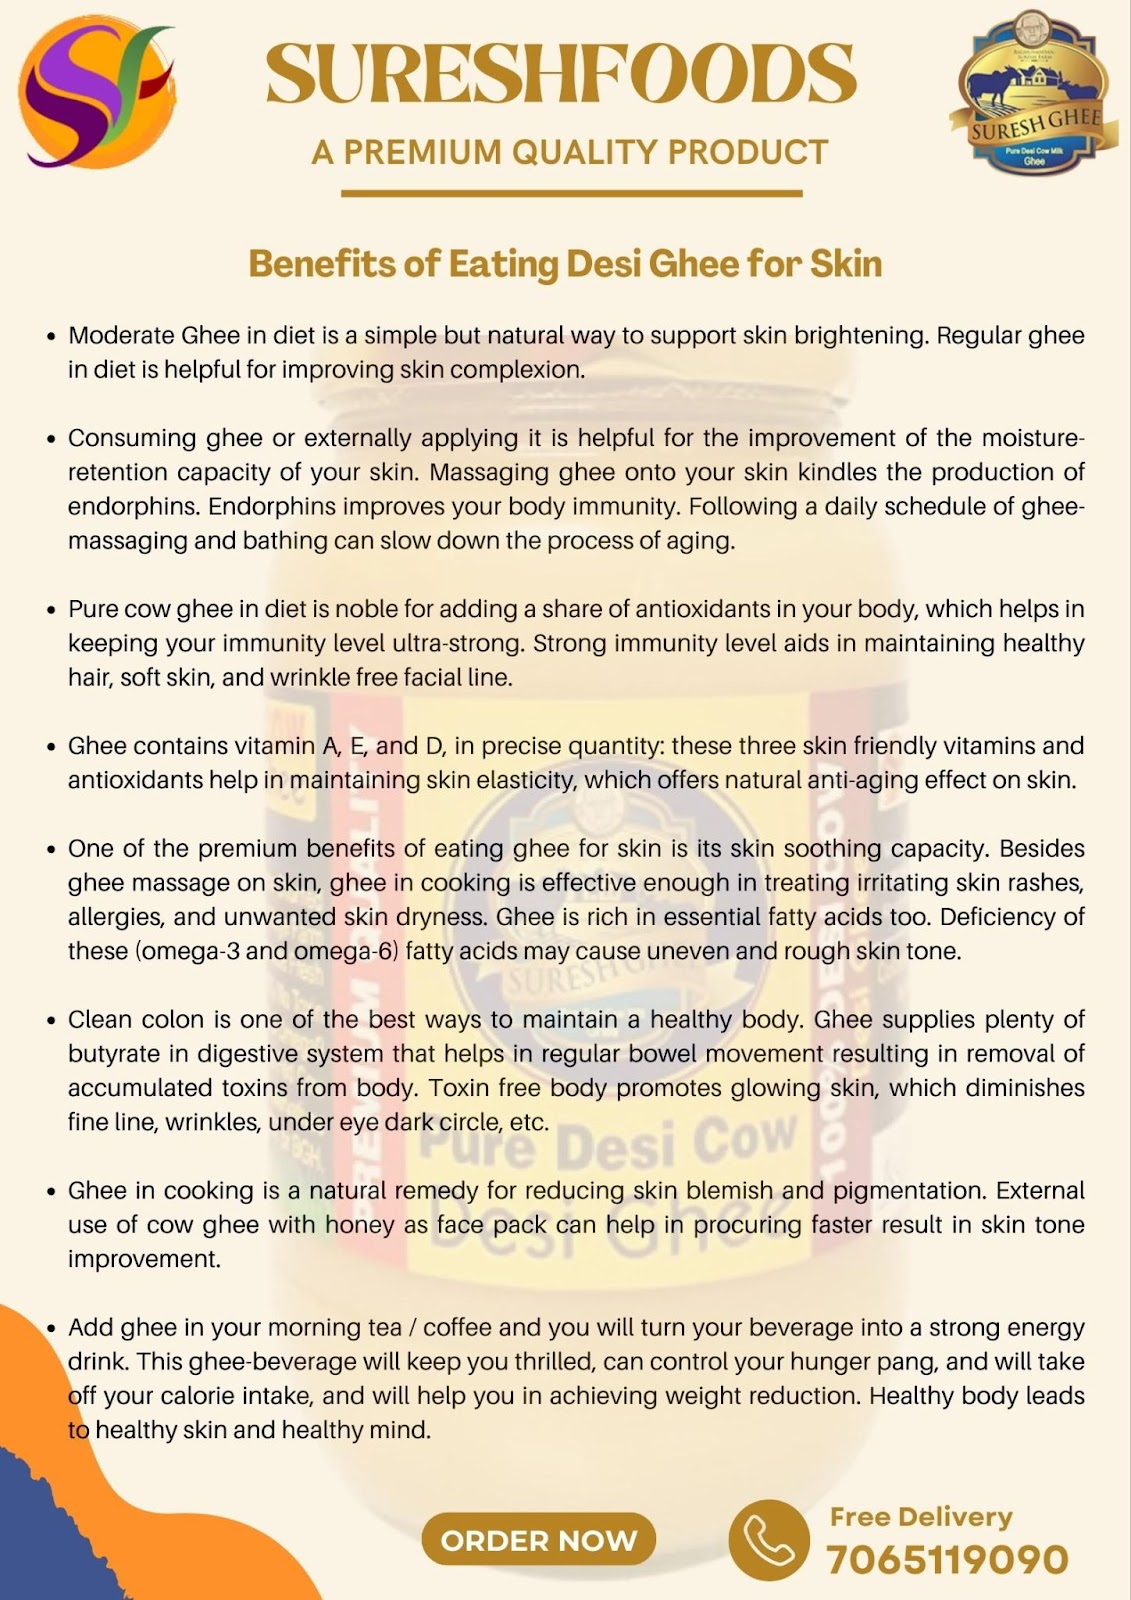 Benefits of Eating Desi Ghee for Skin | Cow ghee, Skin, Skin brightening